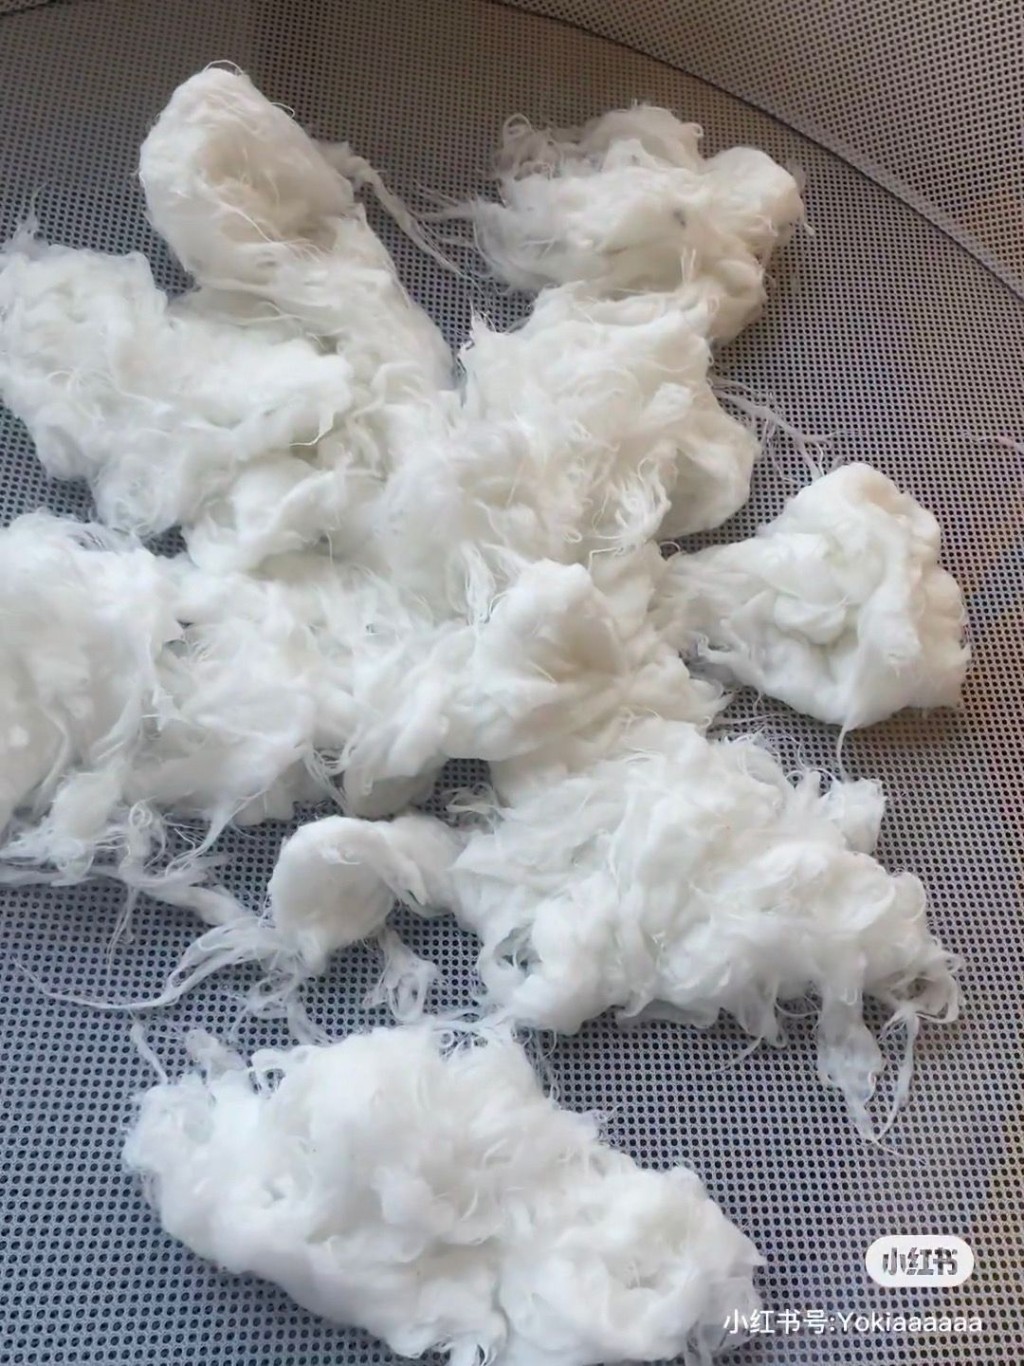 網民放枕頭入洗衣機洗，打開後見棉花爆開崩潰求救。（圖片來源：小紅書@下輩子）